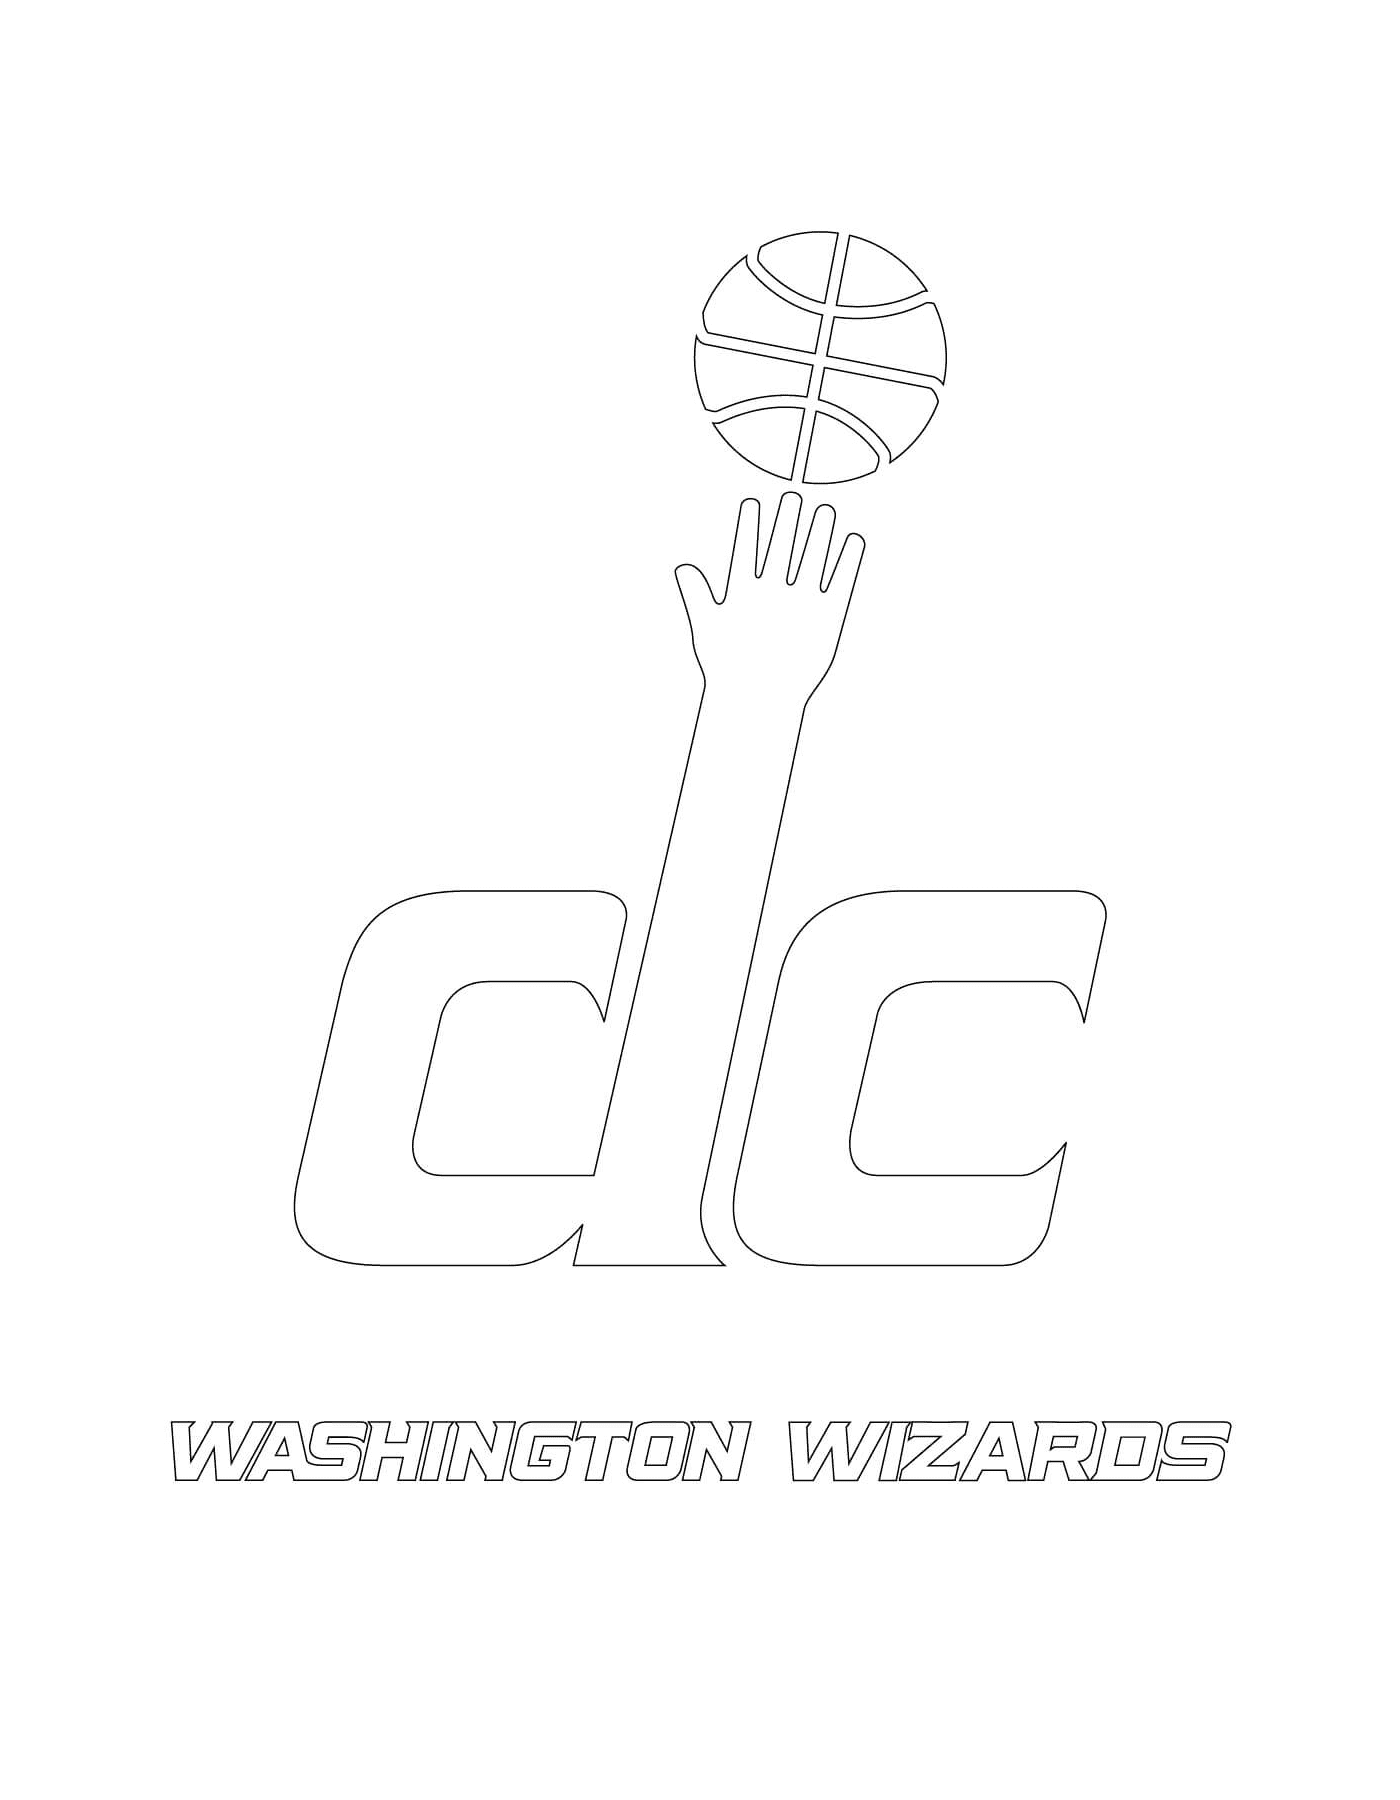   Le logo des Washington Wizards de la NBA 